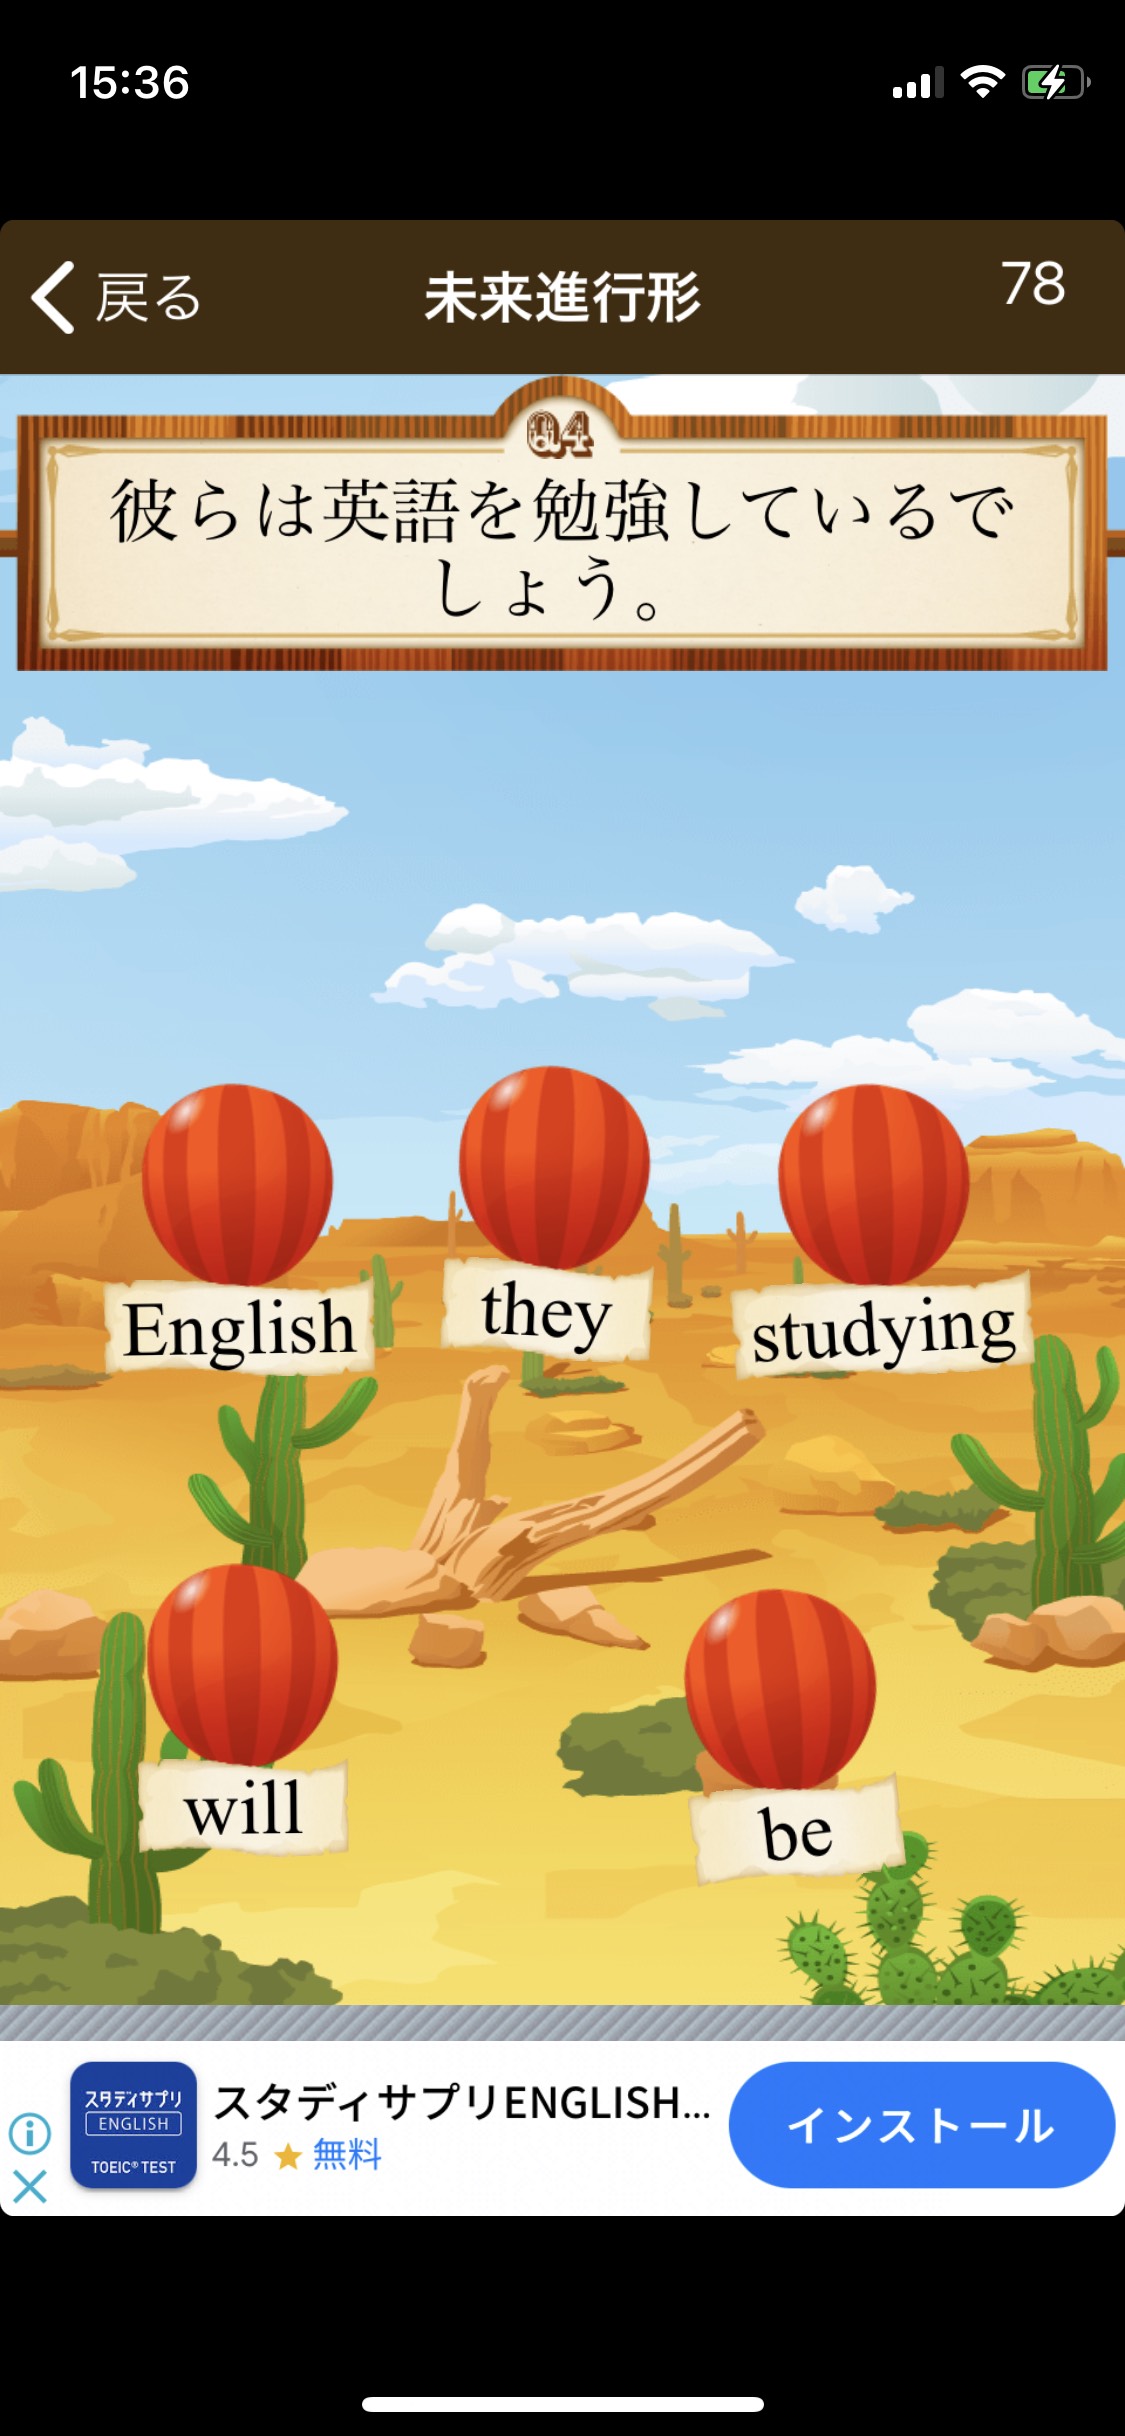 英文法をアプリで楽しく学習 早打ち英文法 は英語復習に最適